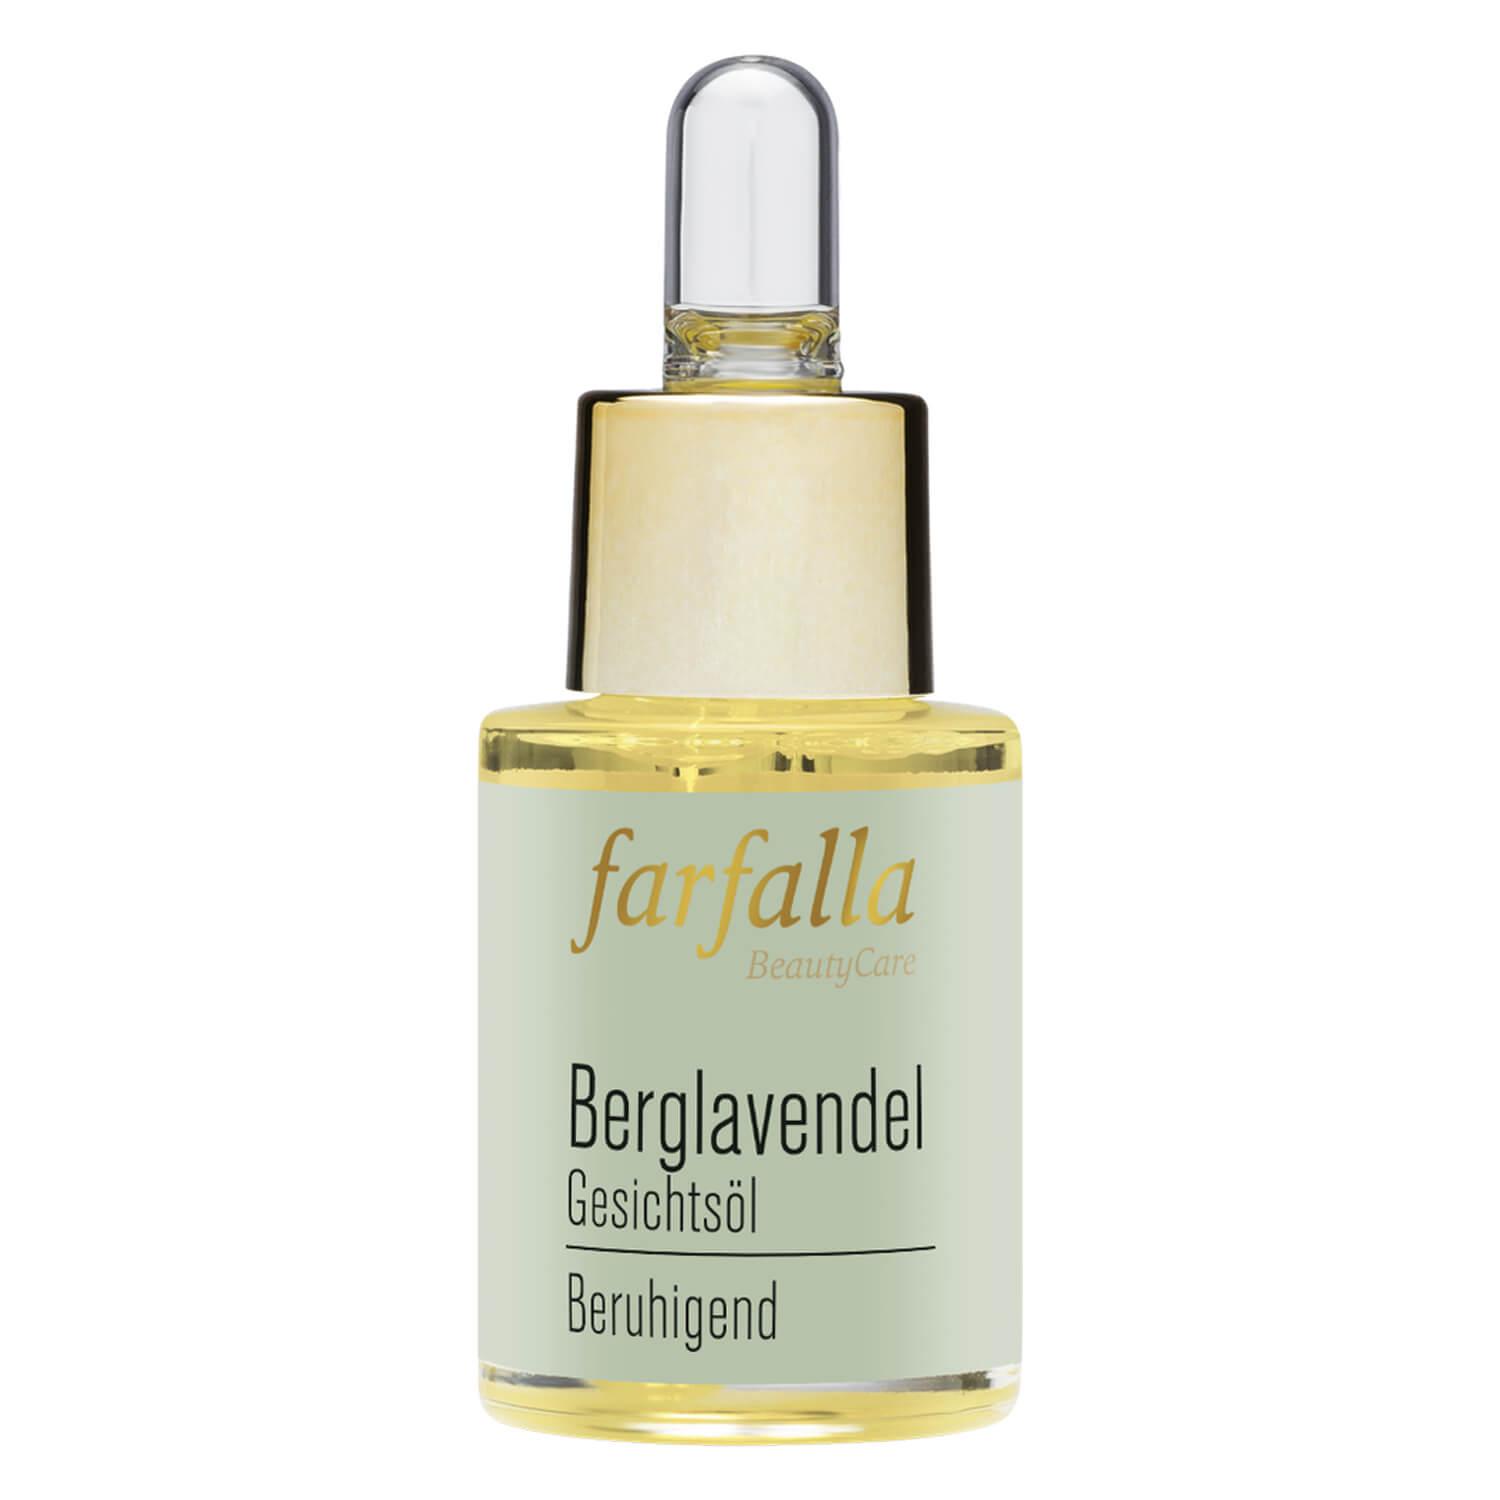 Berglavendel Relax - Facial oil